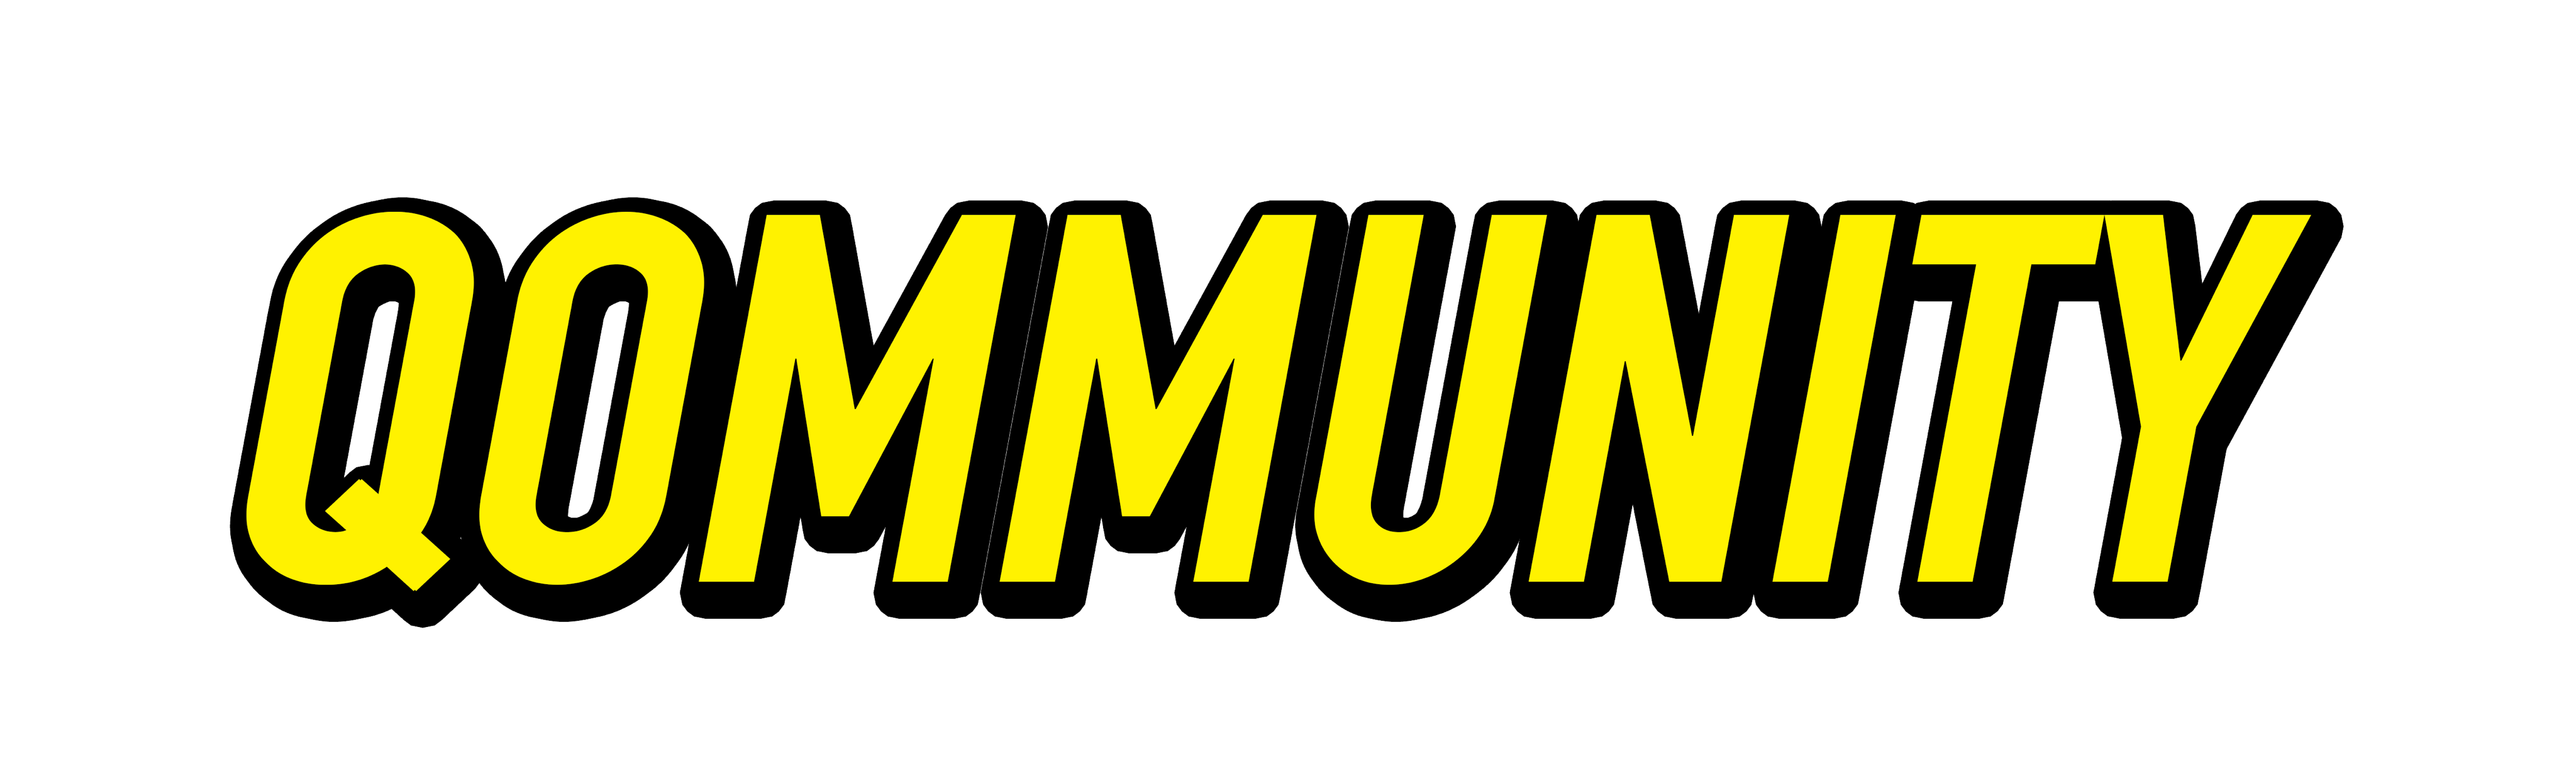 Qommunity logo